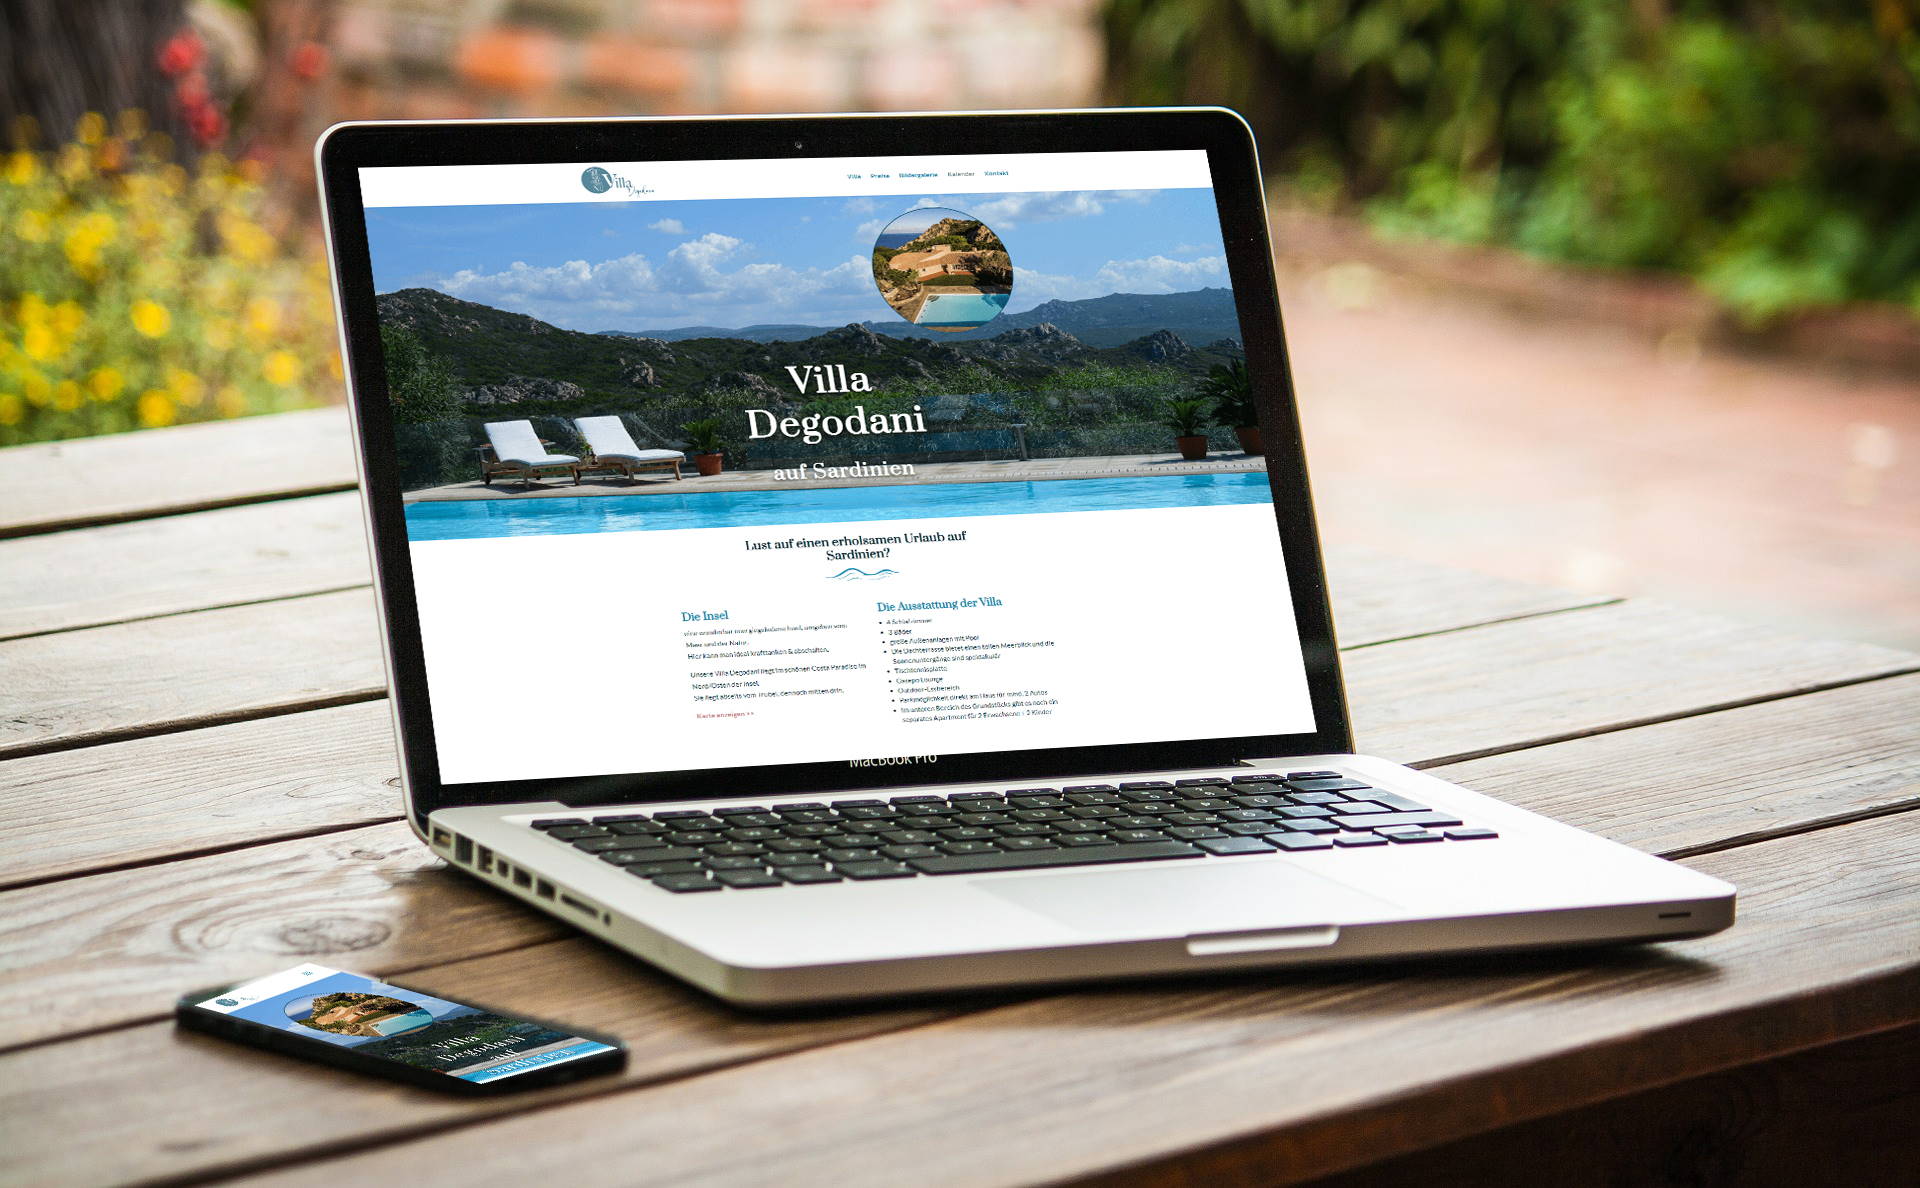 Referenz für Webdesign - Villa Degodani auf Sardinien